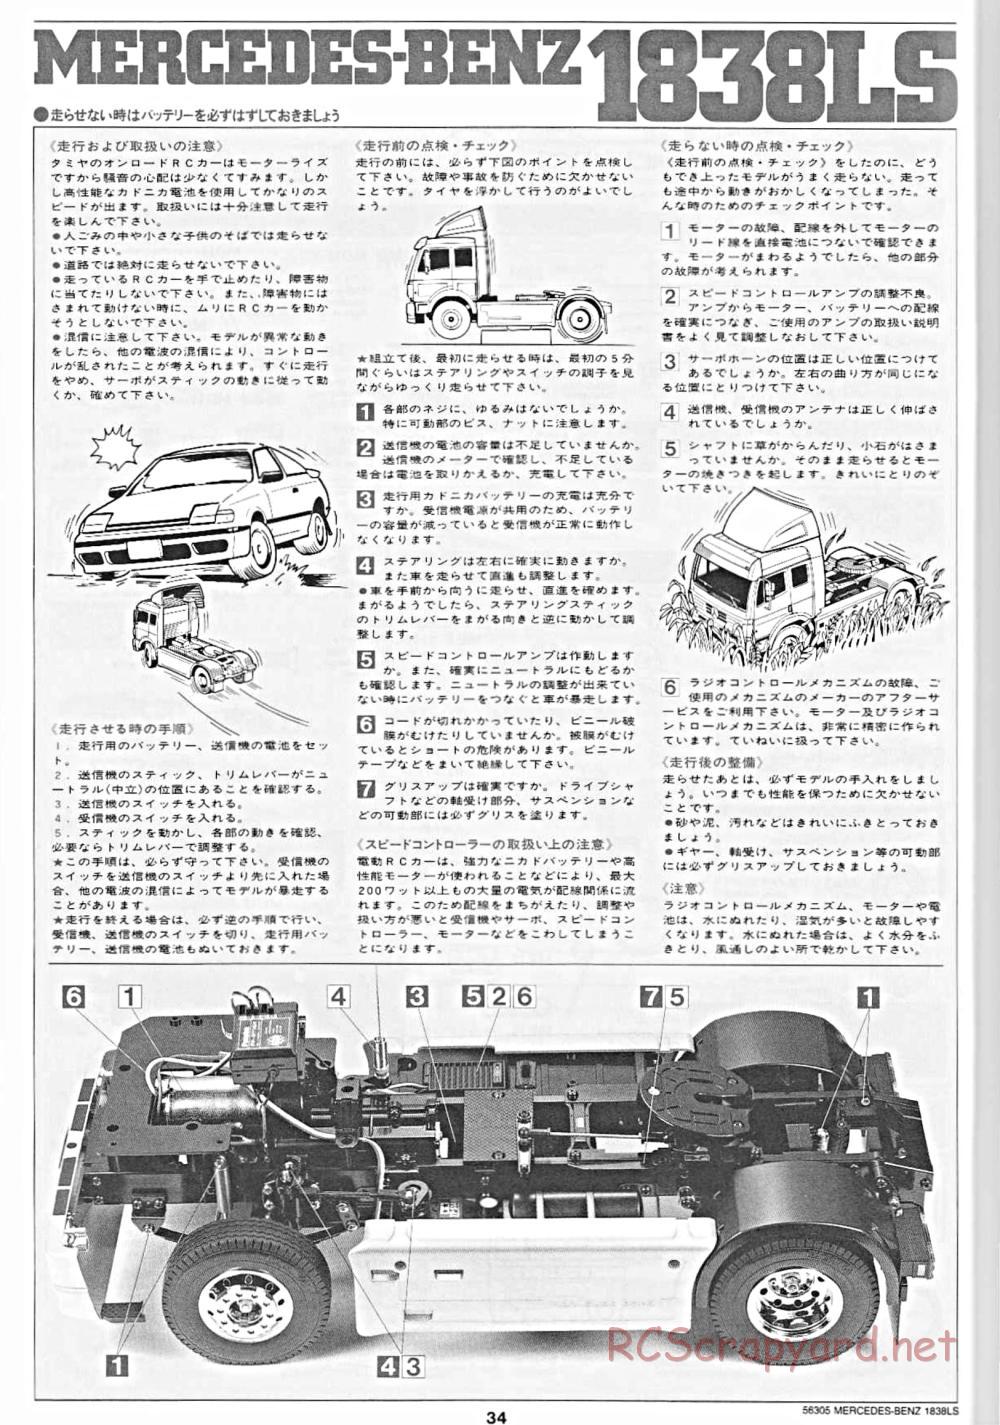 Tamiya - Mercedes-Benz 1838LS - Manual - Page 34